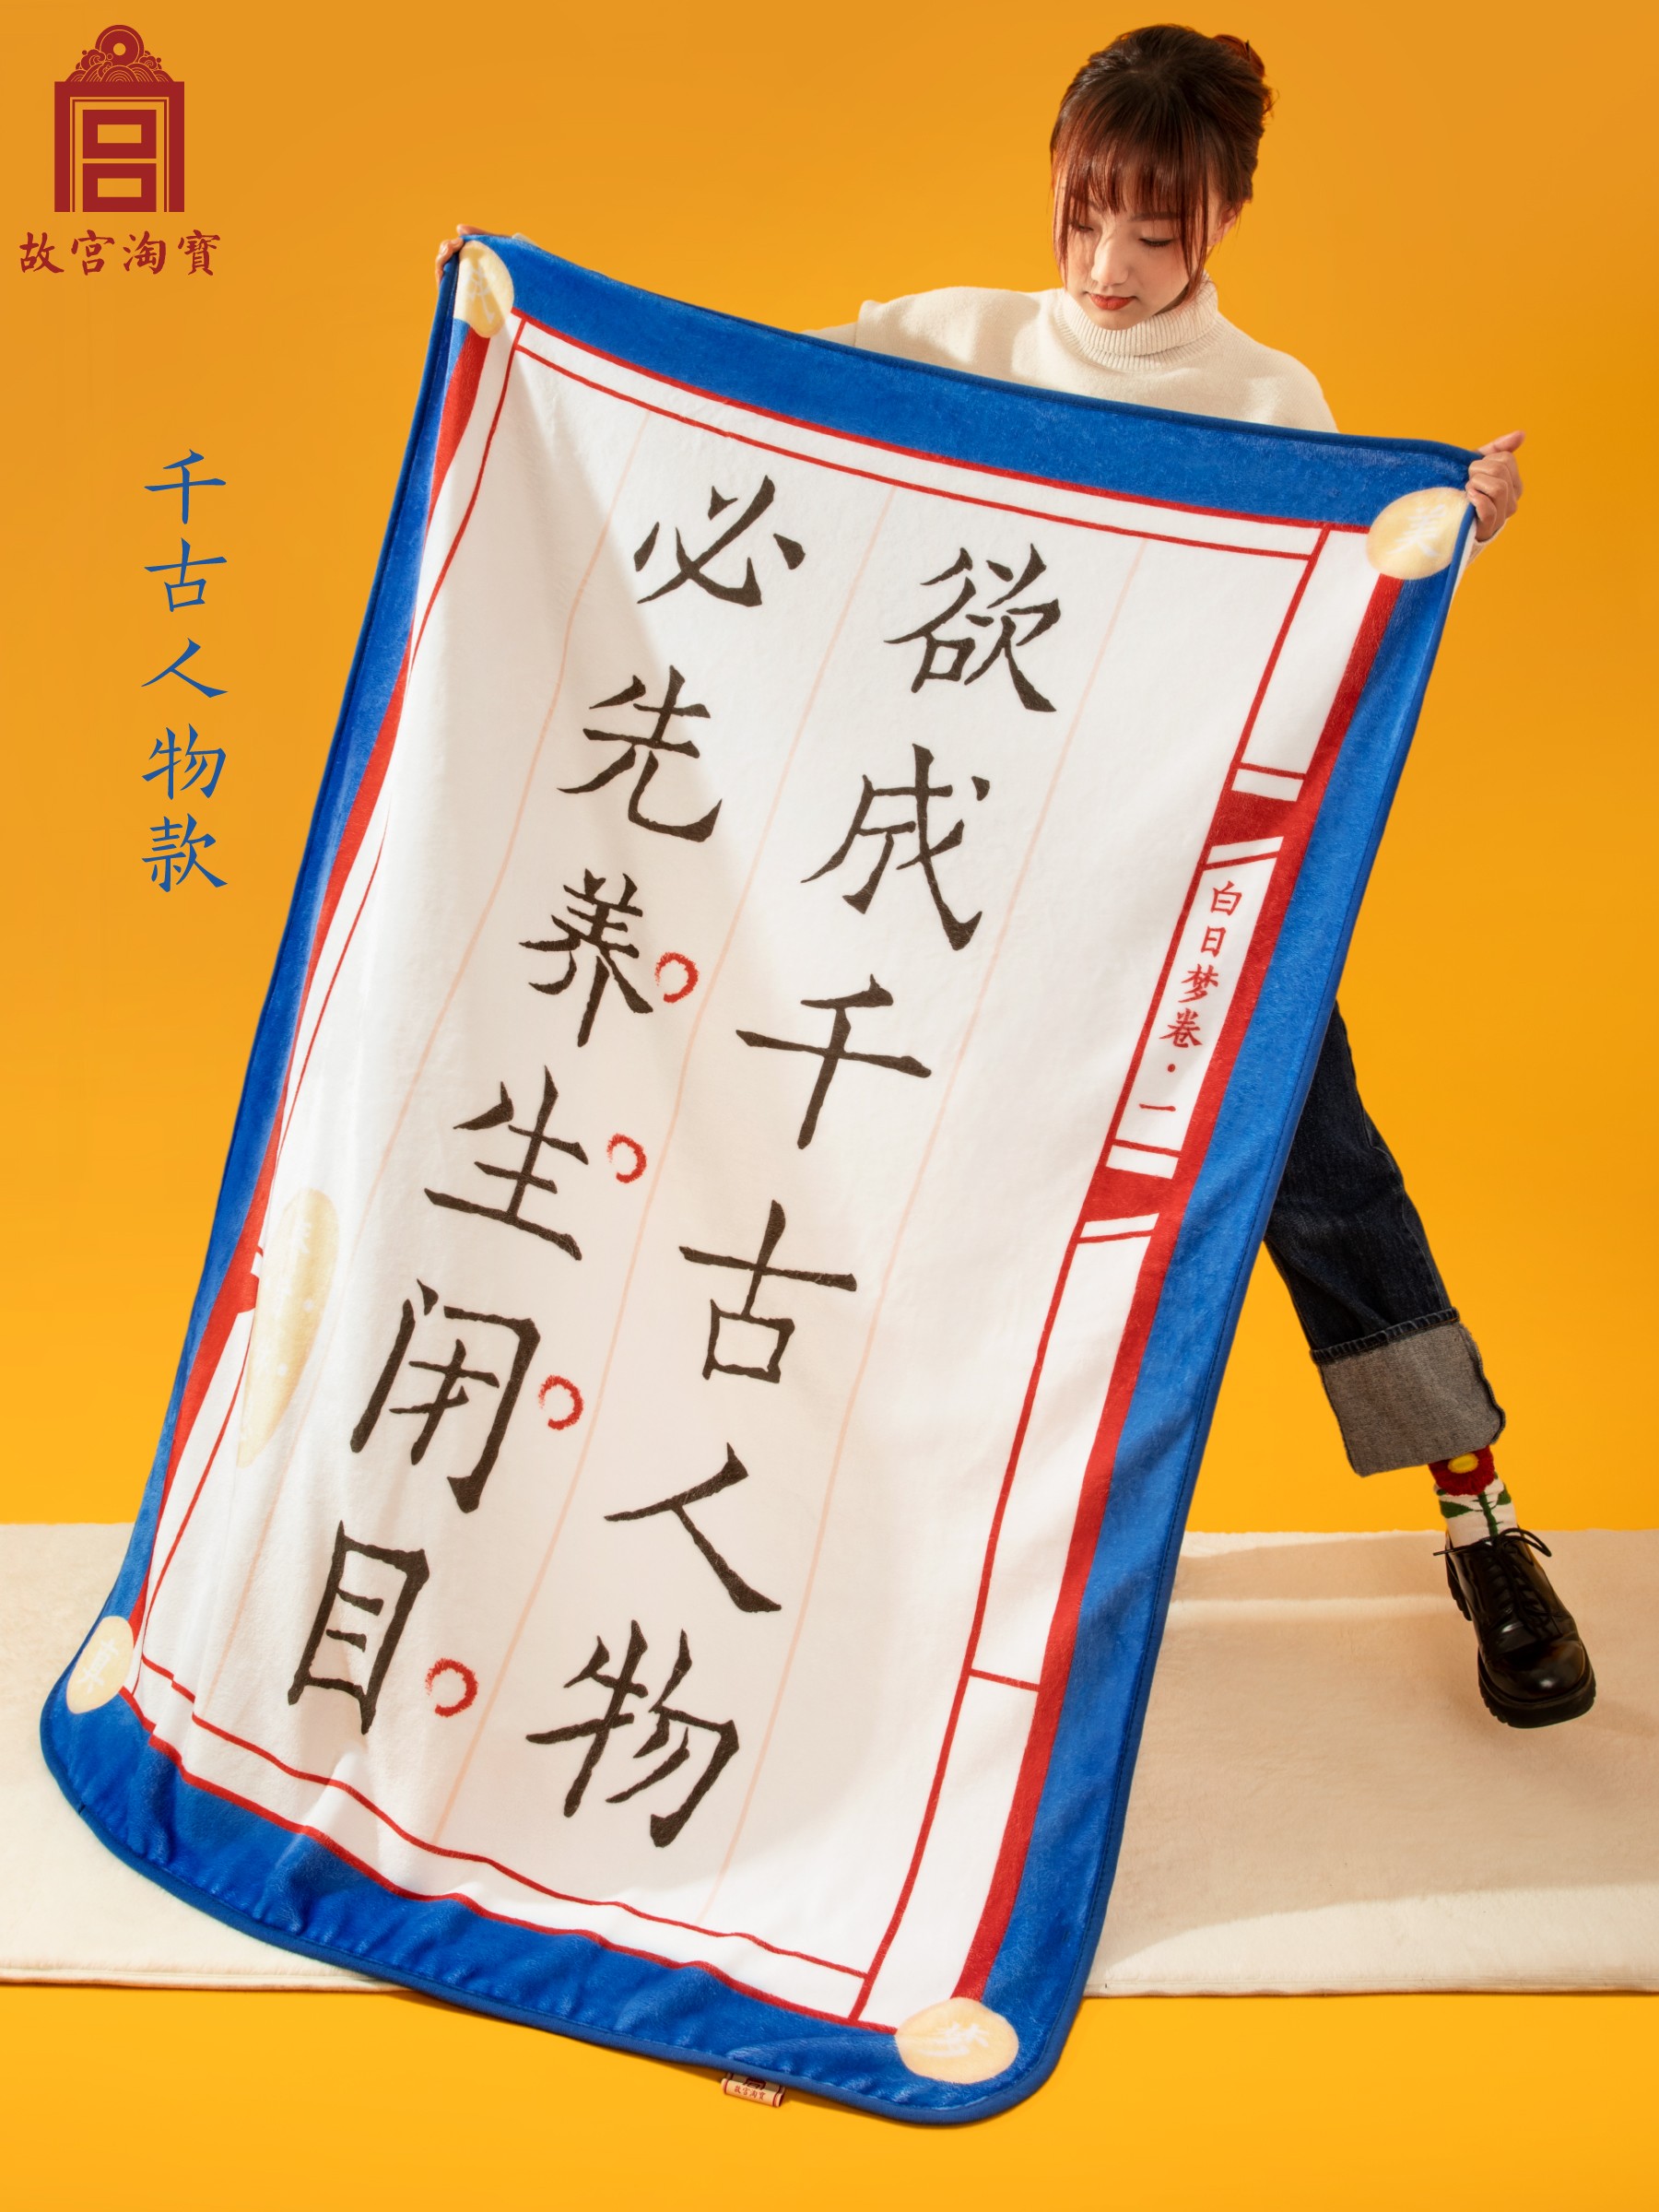 新中式風格午睡毯 故宮淘寶奉旨休息毯約150cmx106cm